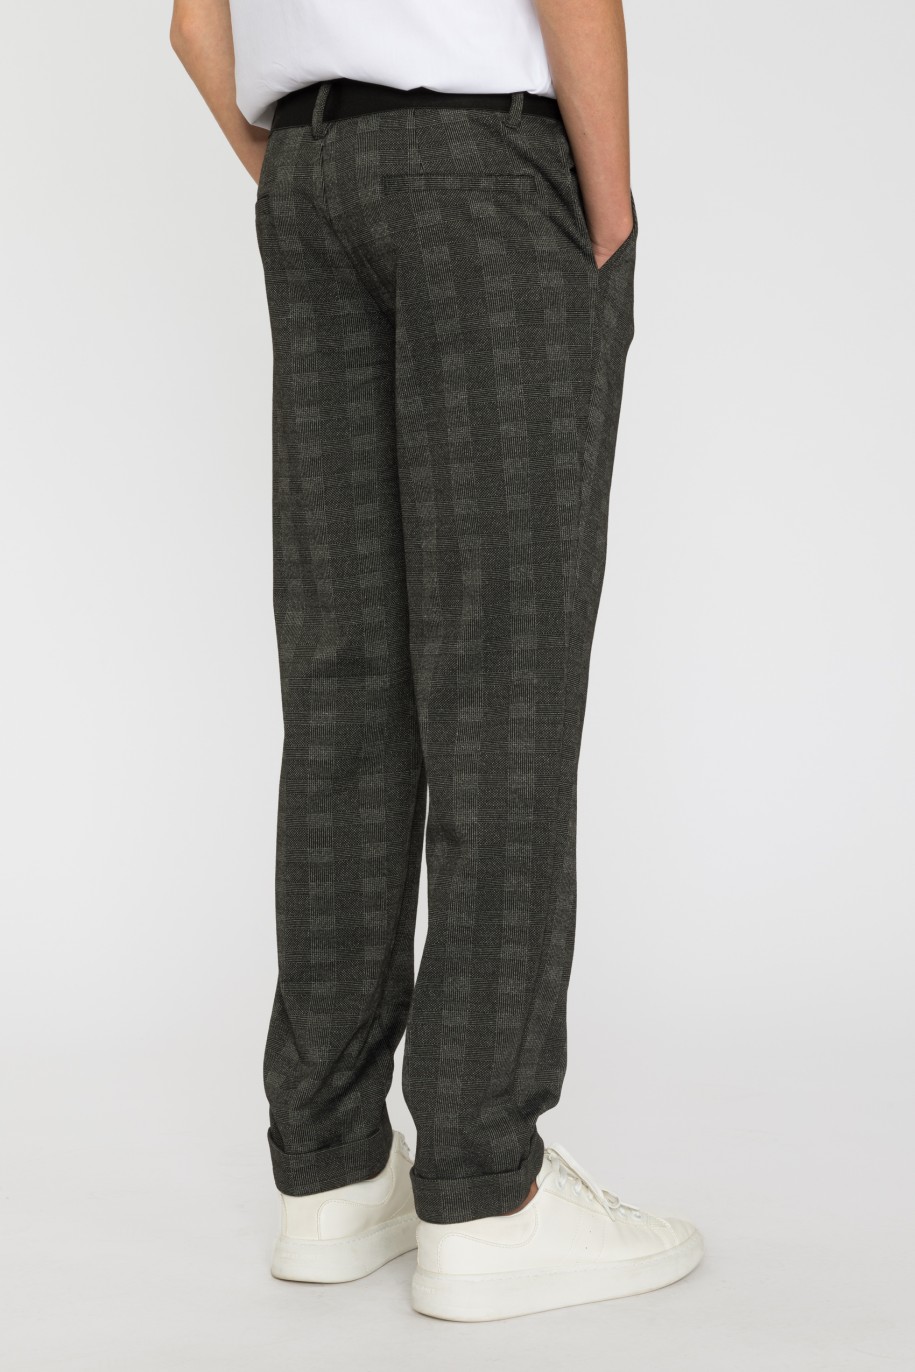 Eleganckie spodnie z dzianiny żakardowej dla chłopaka - 33597